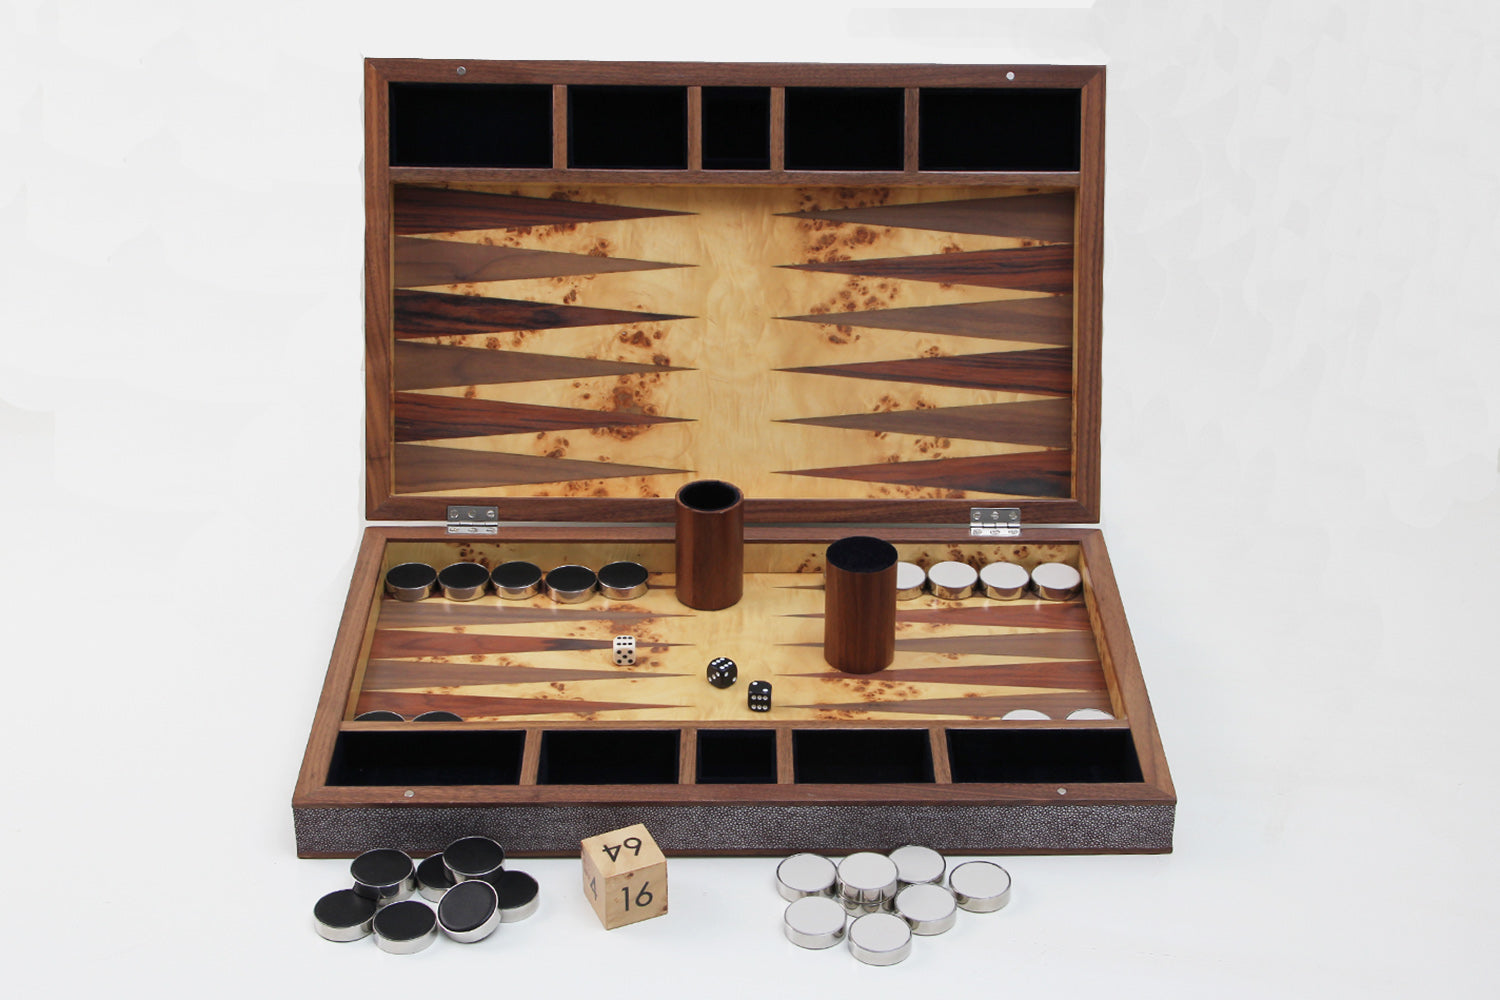  https://forwooddesign.com/app/uploads/2020/06/Gorgeous-backgammon-set-in-Mulberry-shagreen-3.jpg